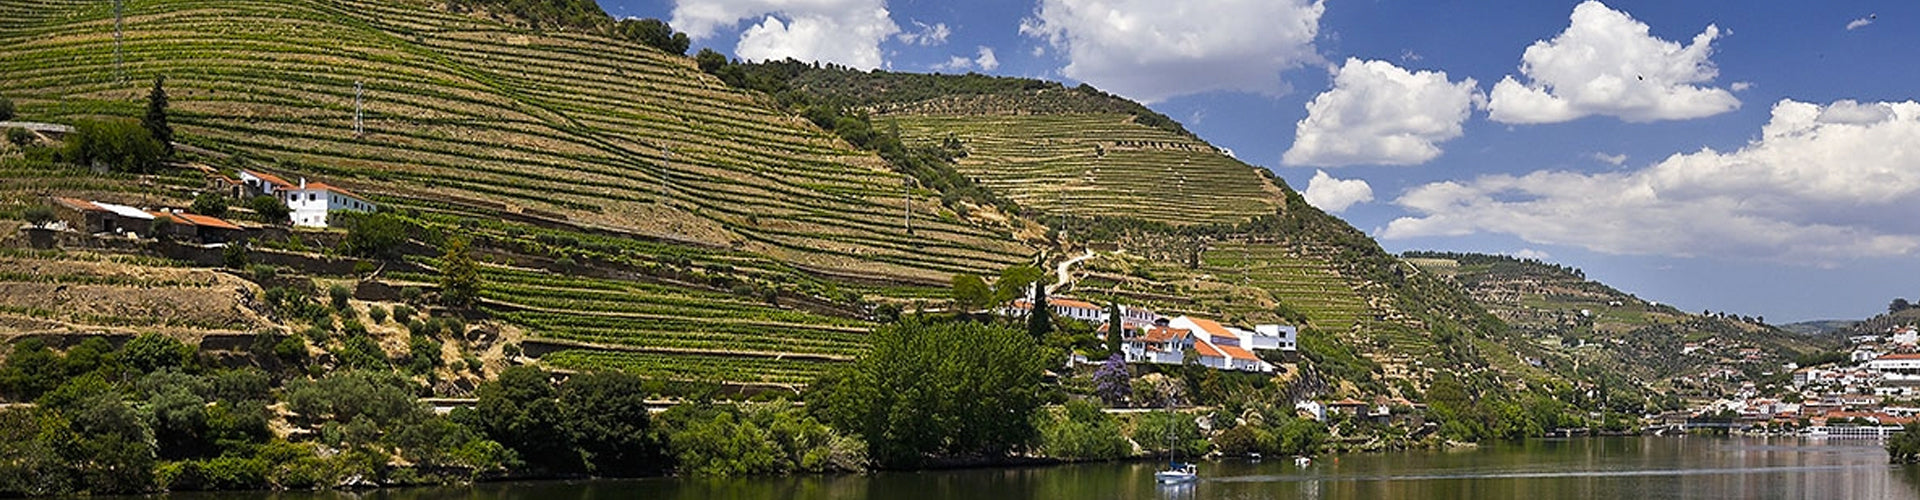 Quinta de la Rosa on the banks of the Douro in Portugal